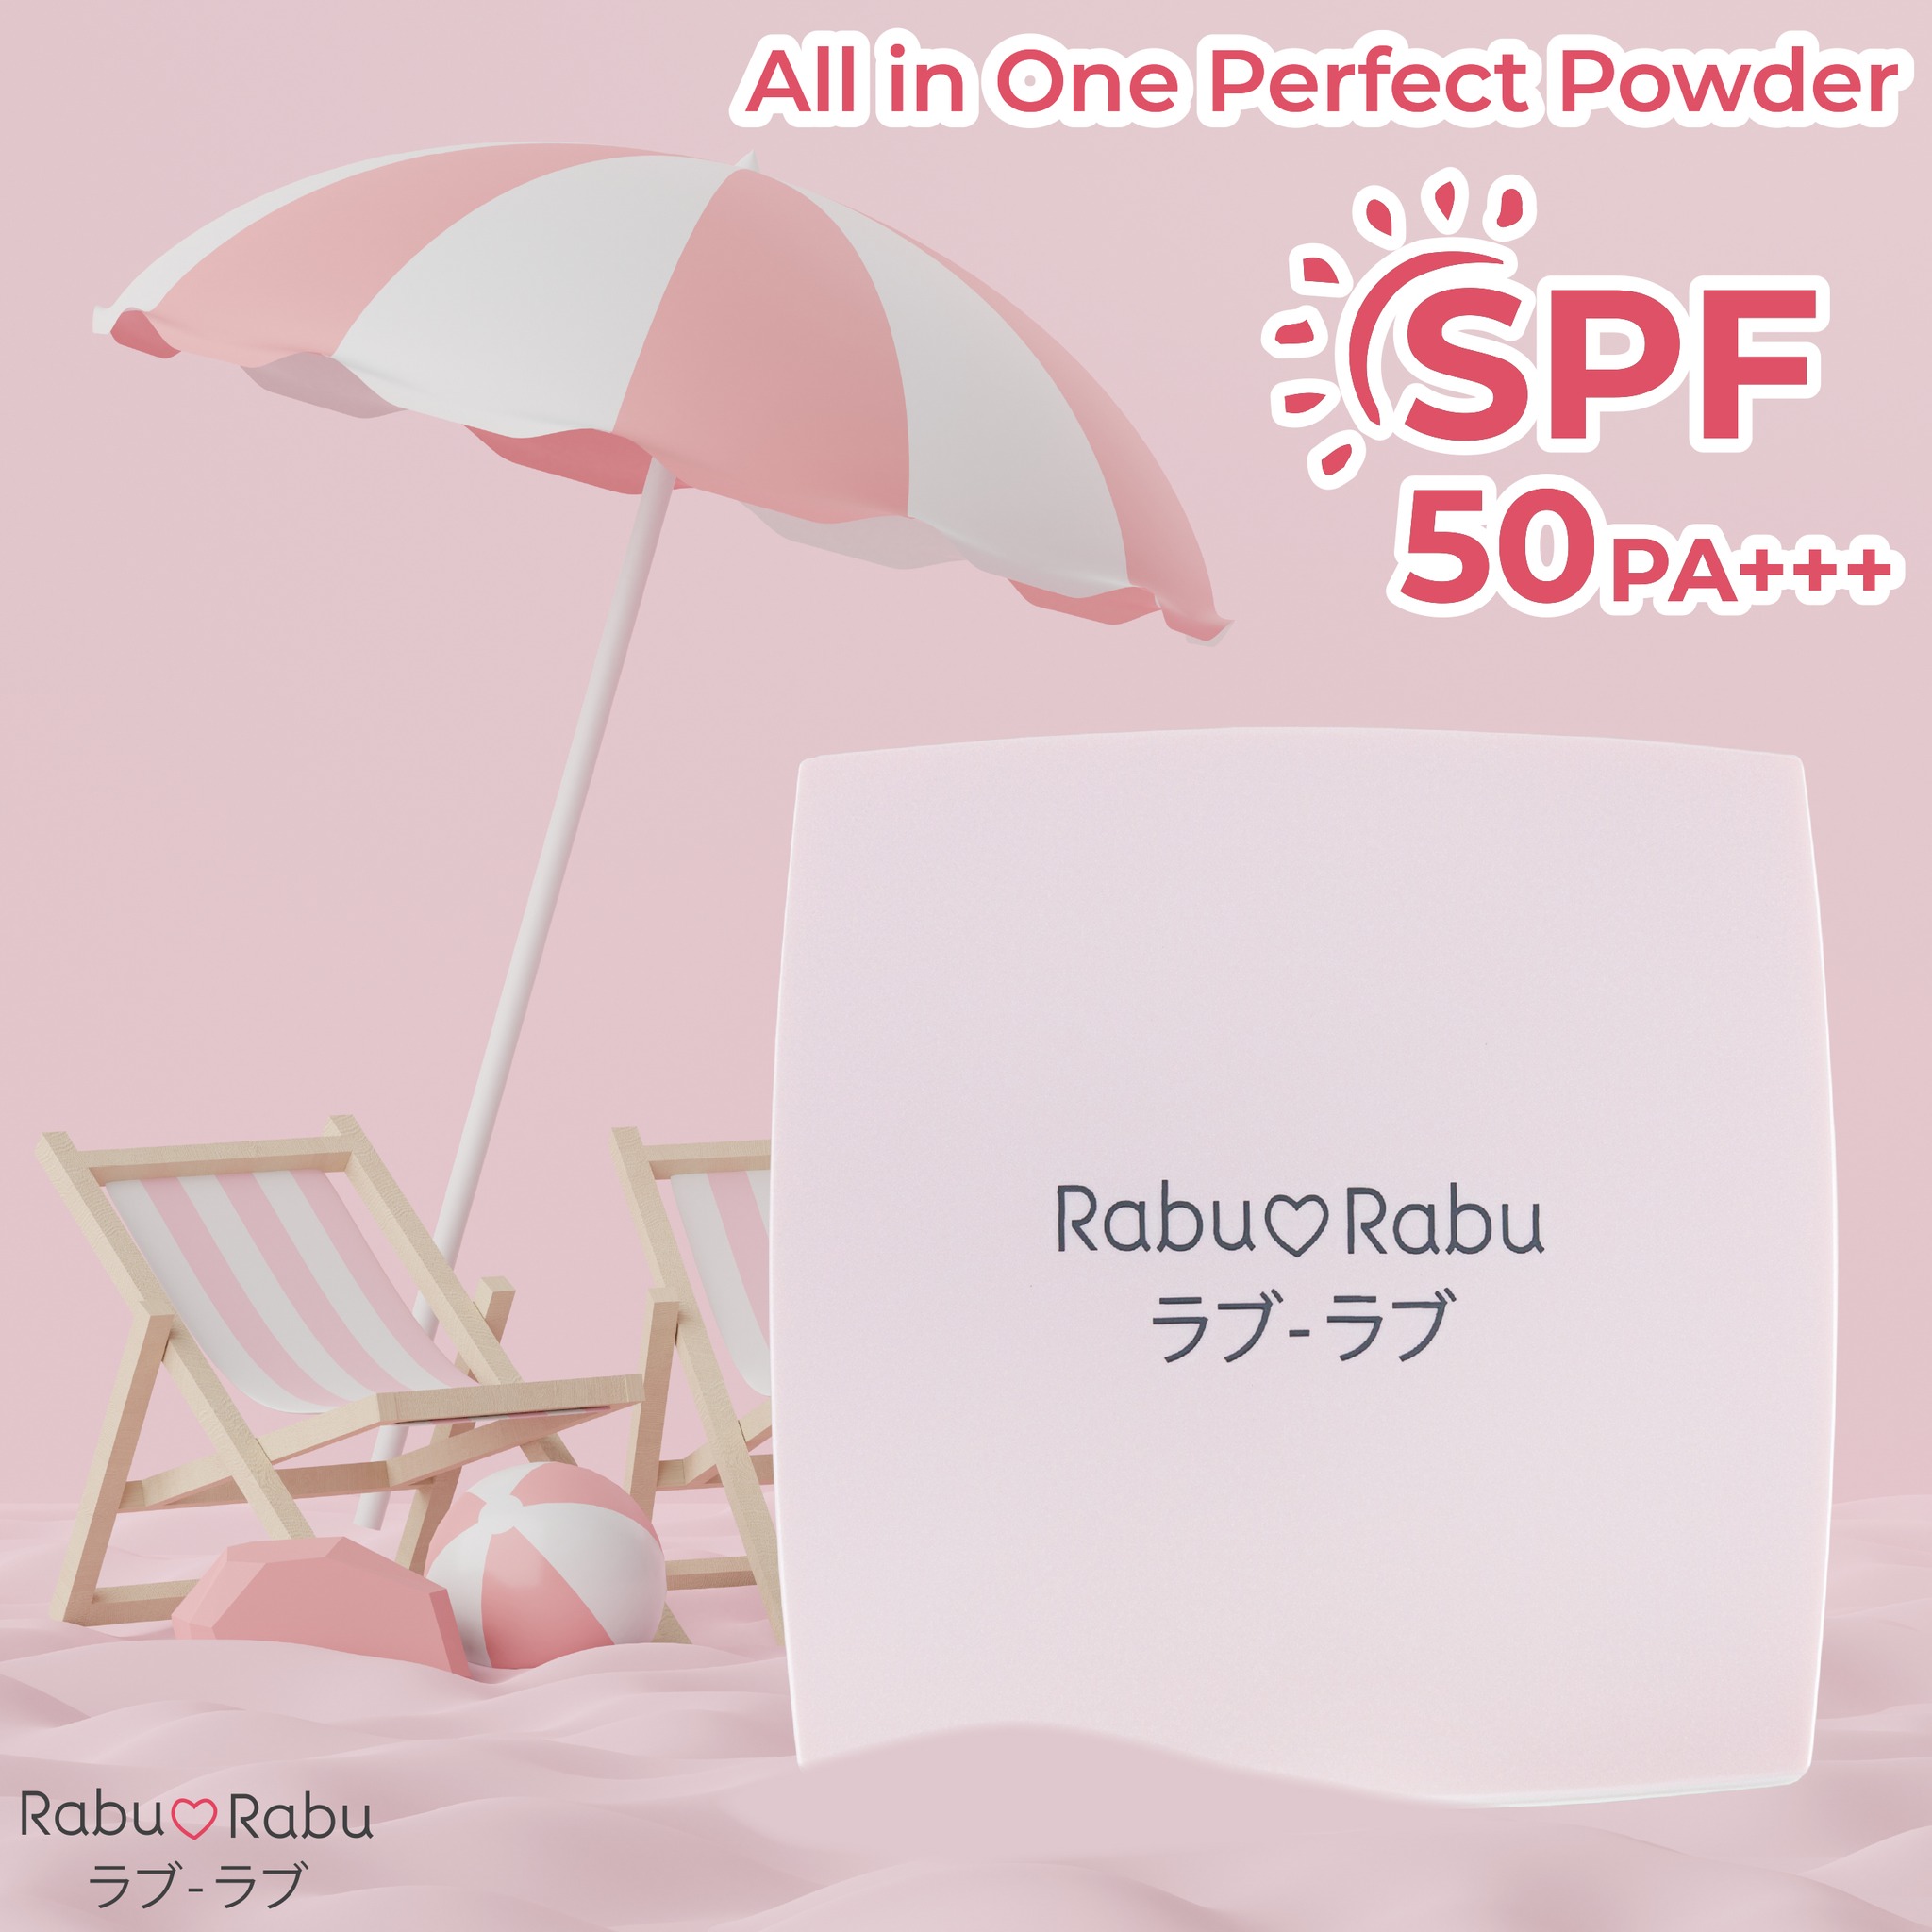 Rabu Rabu All in One Perfect Powder 10g